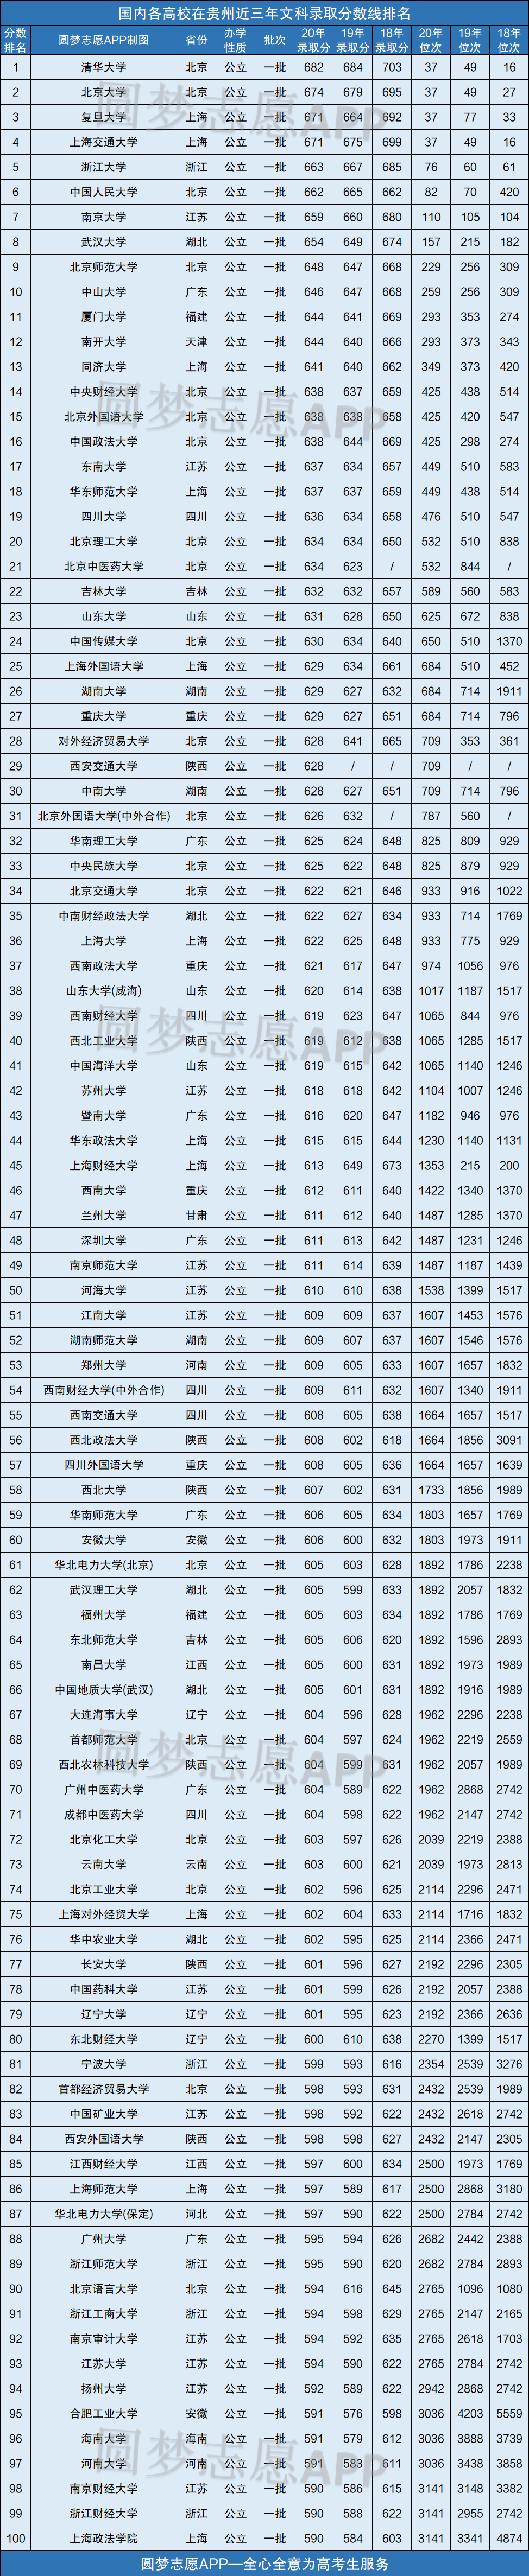 贵州所有大学录取分数线2021参考:2020年各高校在贵州录取分数线一览